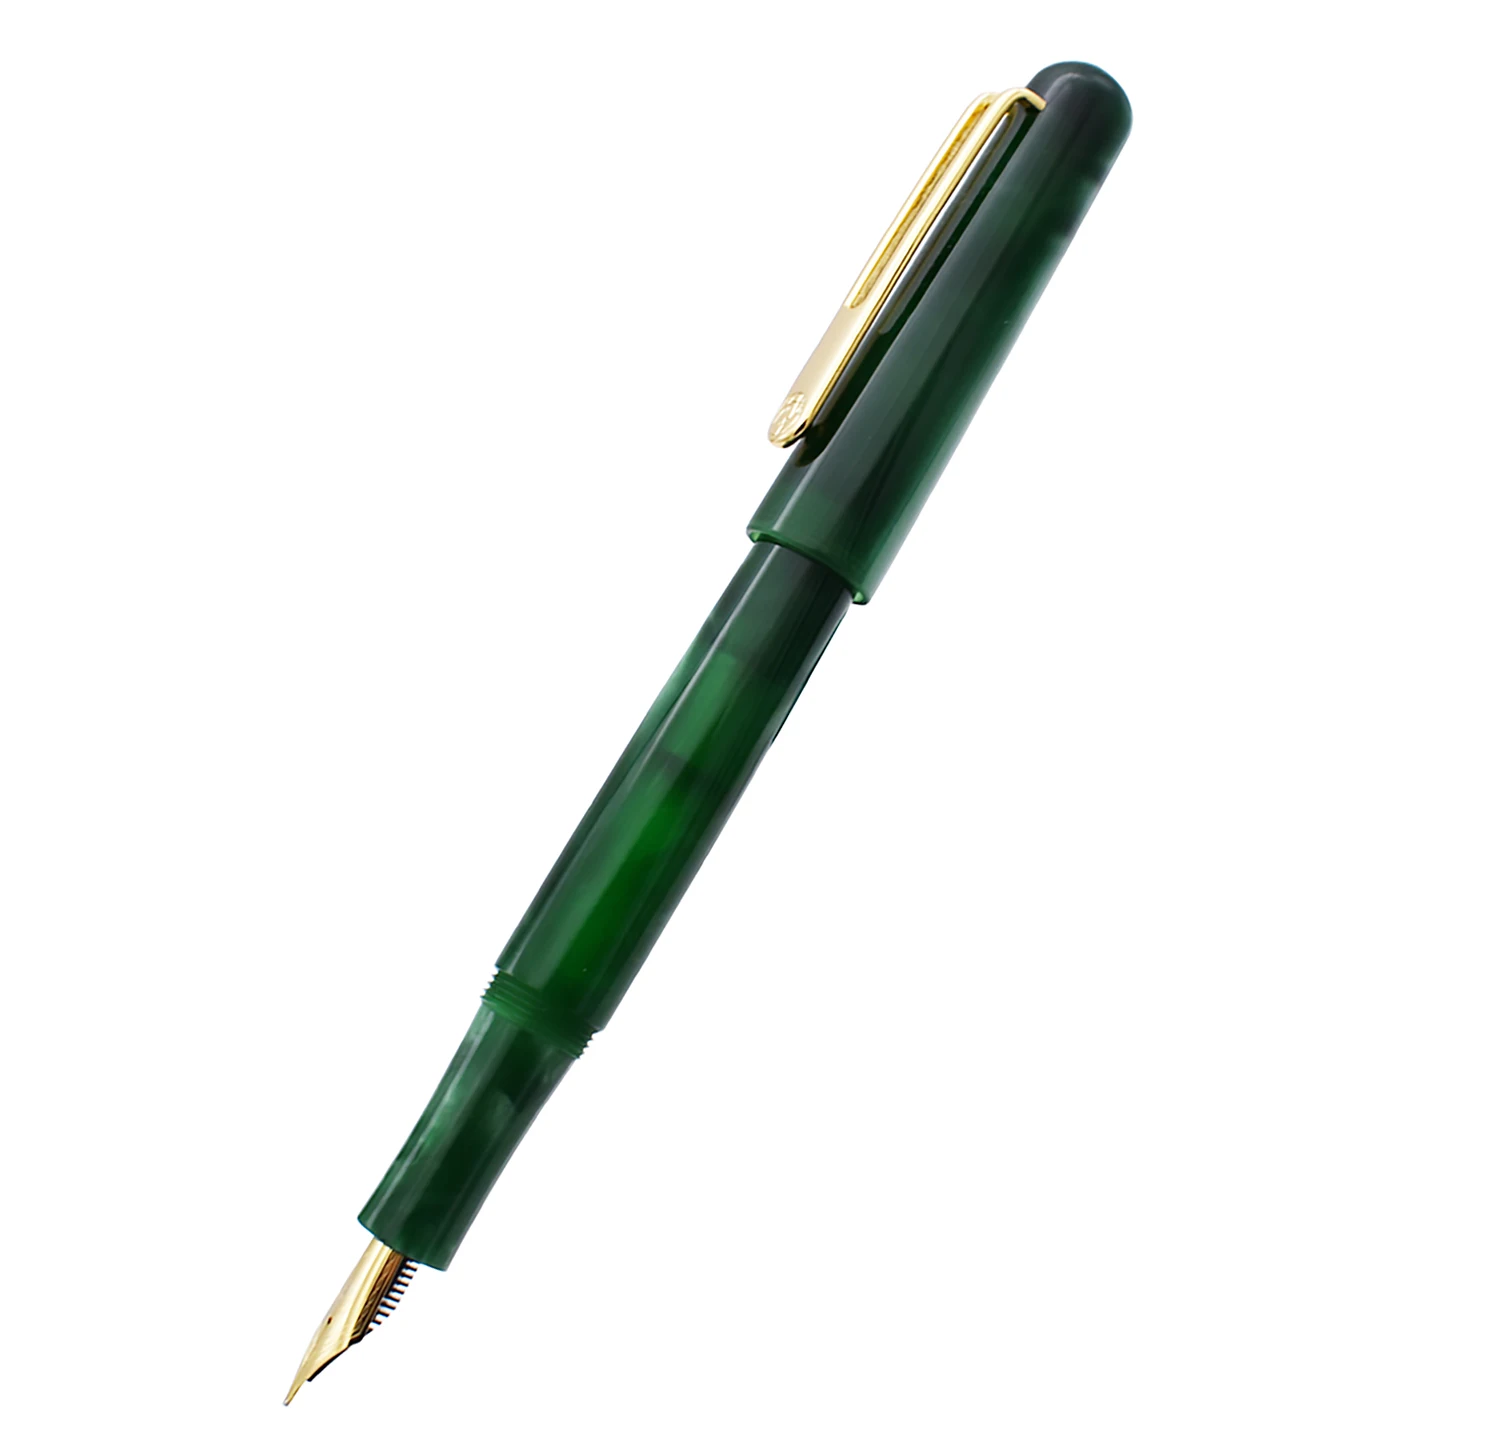 ПИКАССО целлулоид перьевая ручка Pimio EtSandy Аврора зеленый PS-975 иридия F чернильная ручка Подарочная ручка для Бизнес для офиса